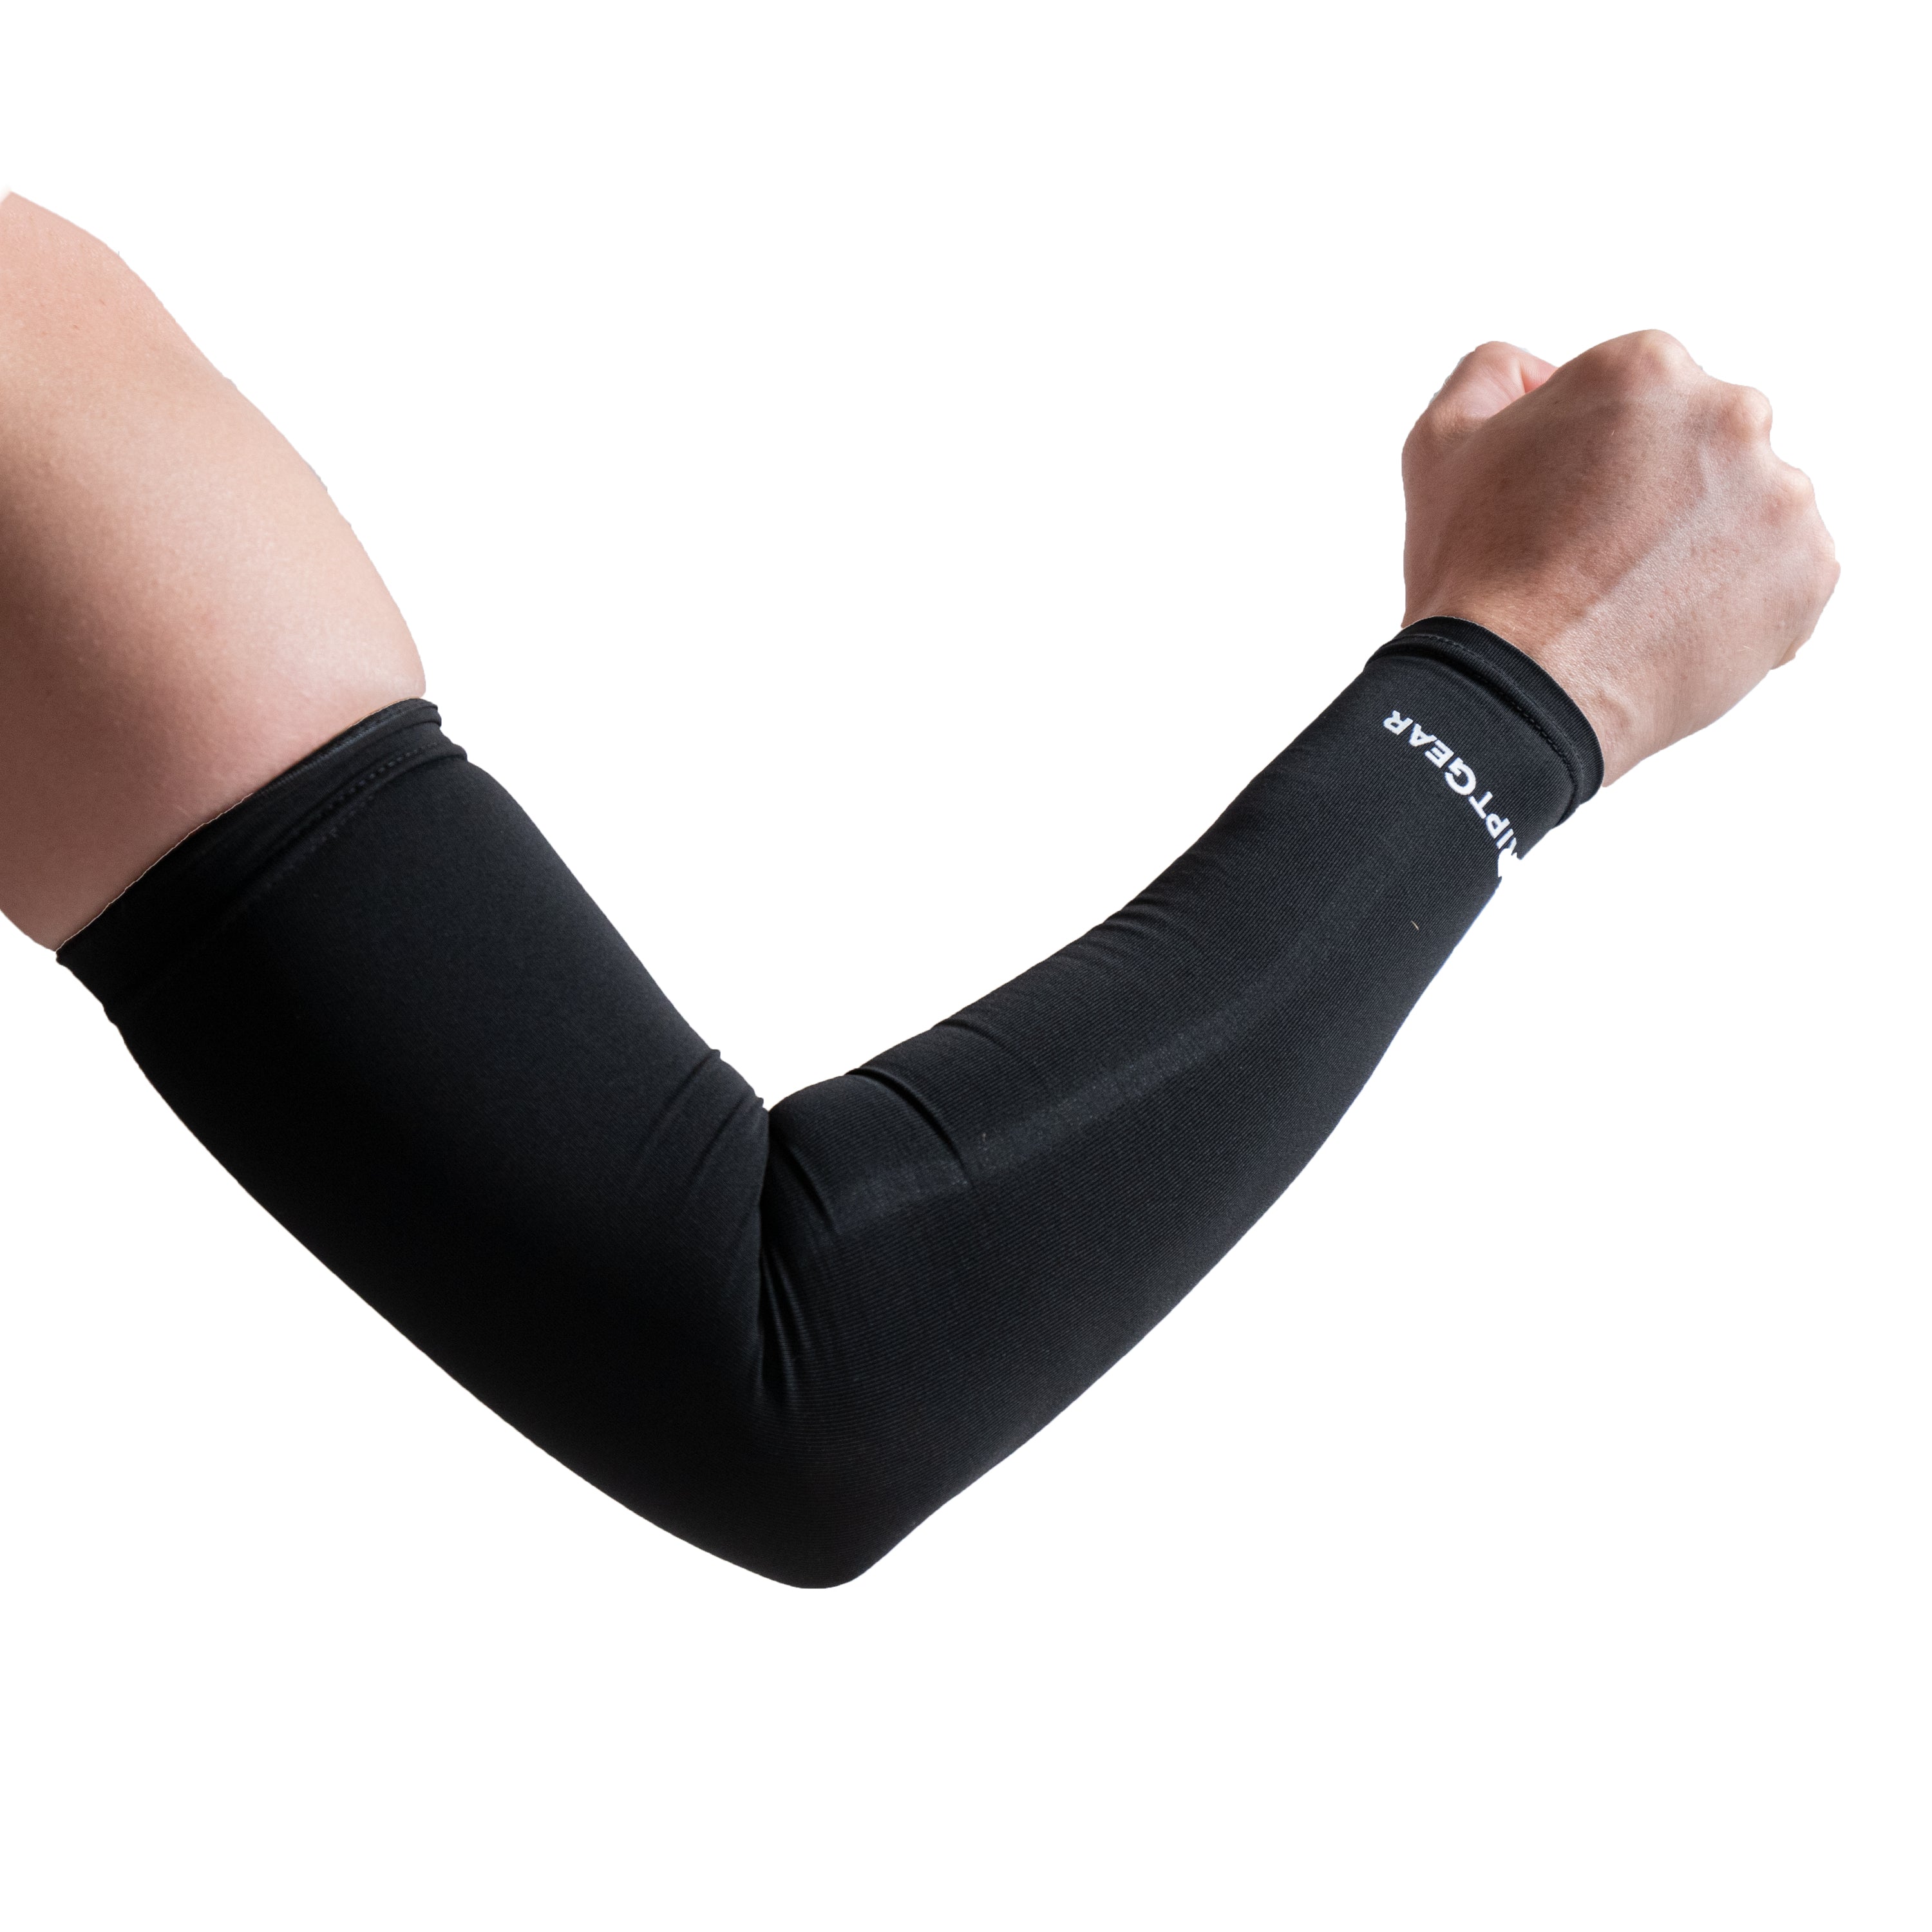 4 Reasons Athletes Use Arm Sleeves